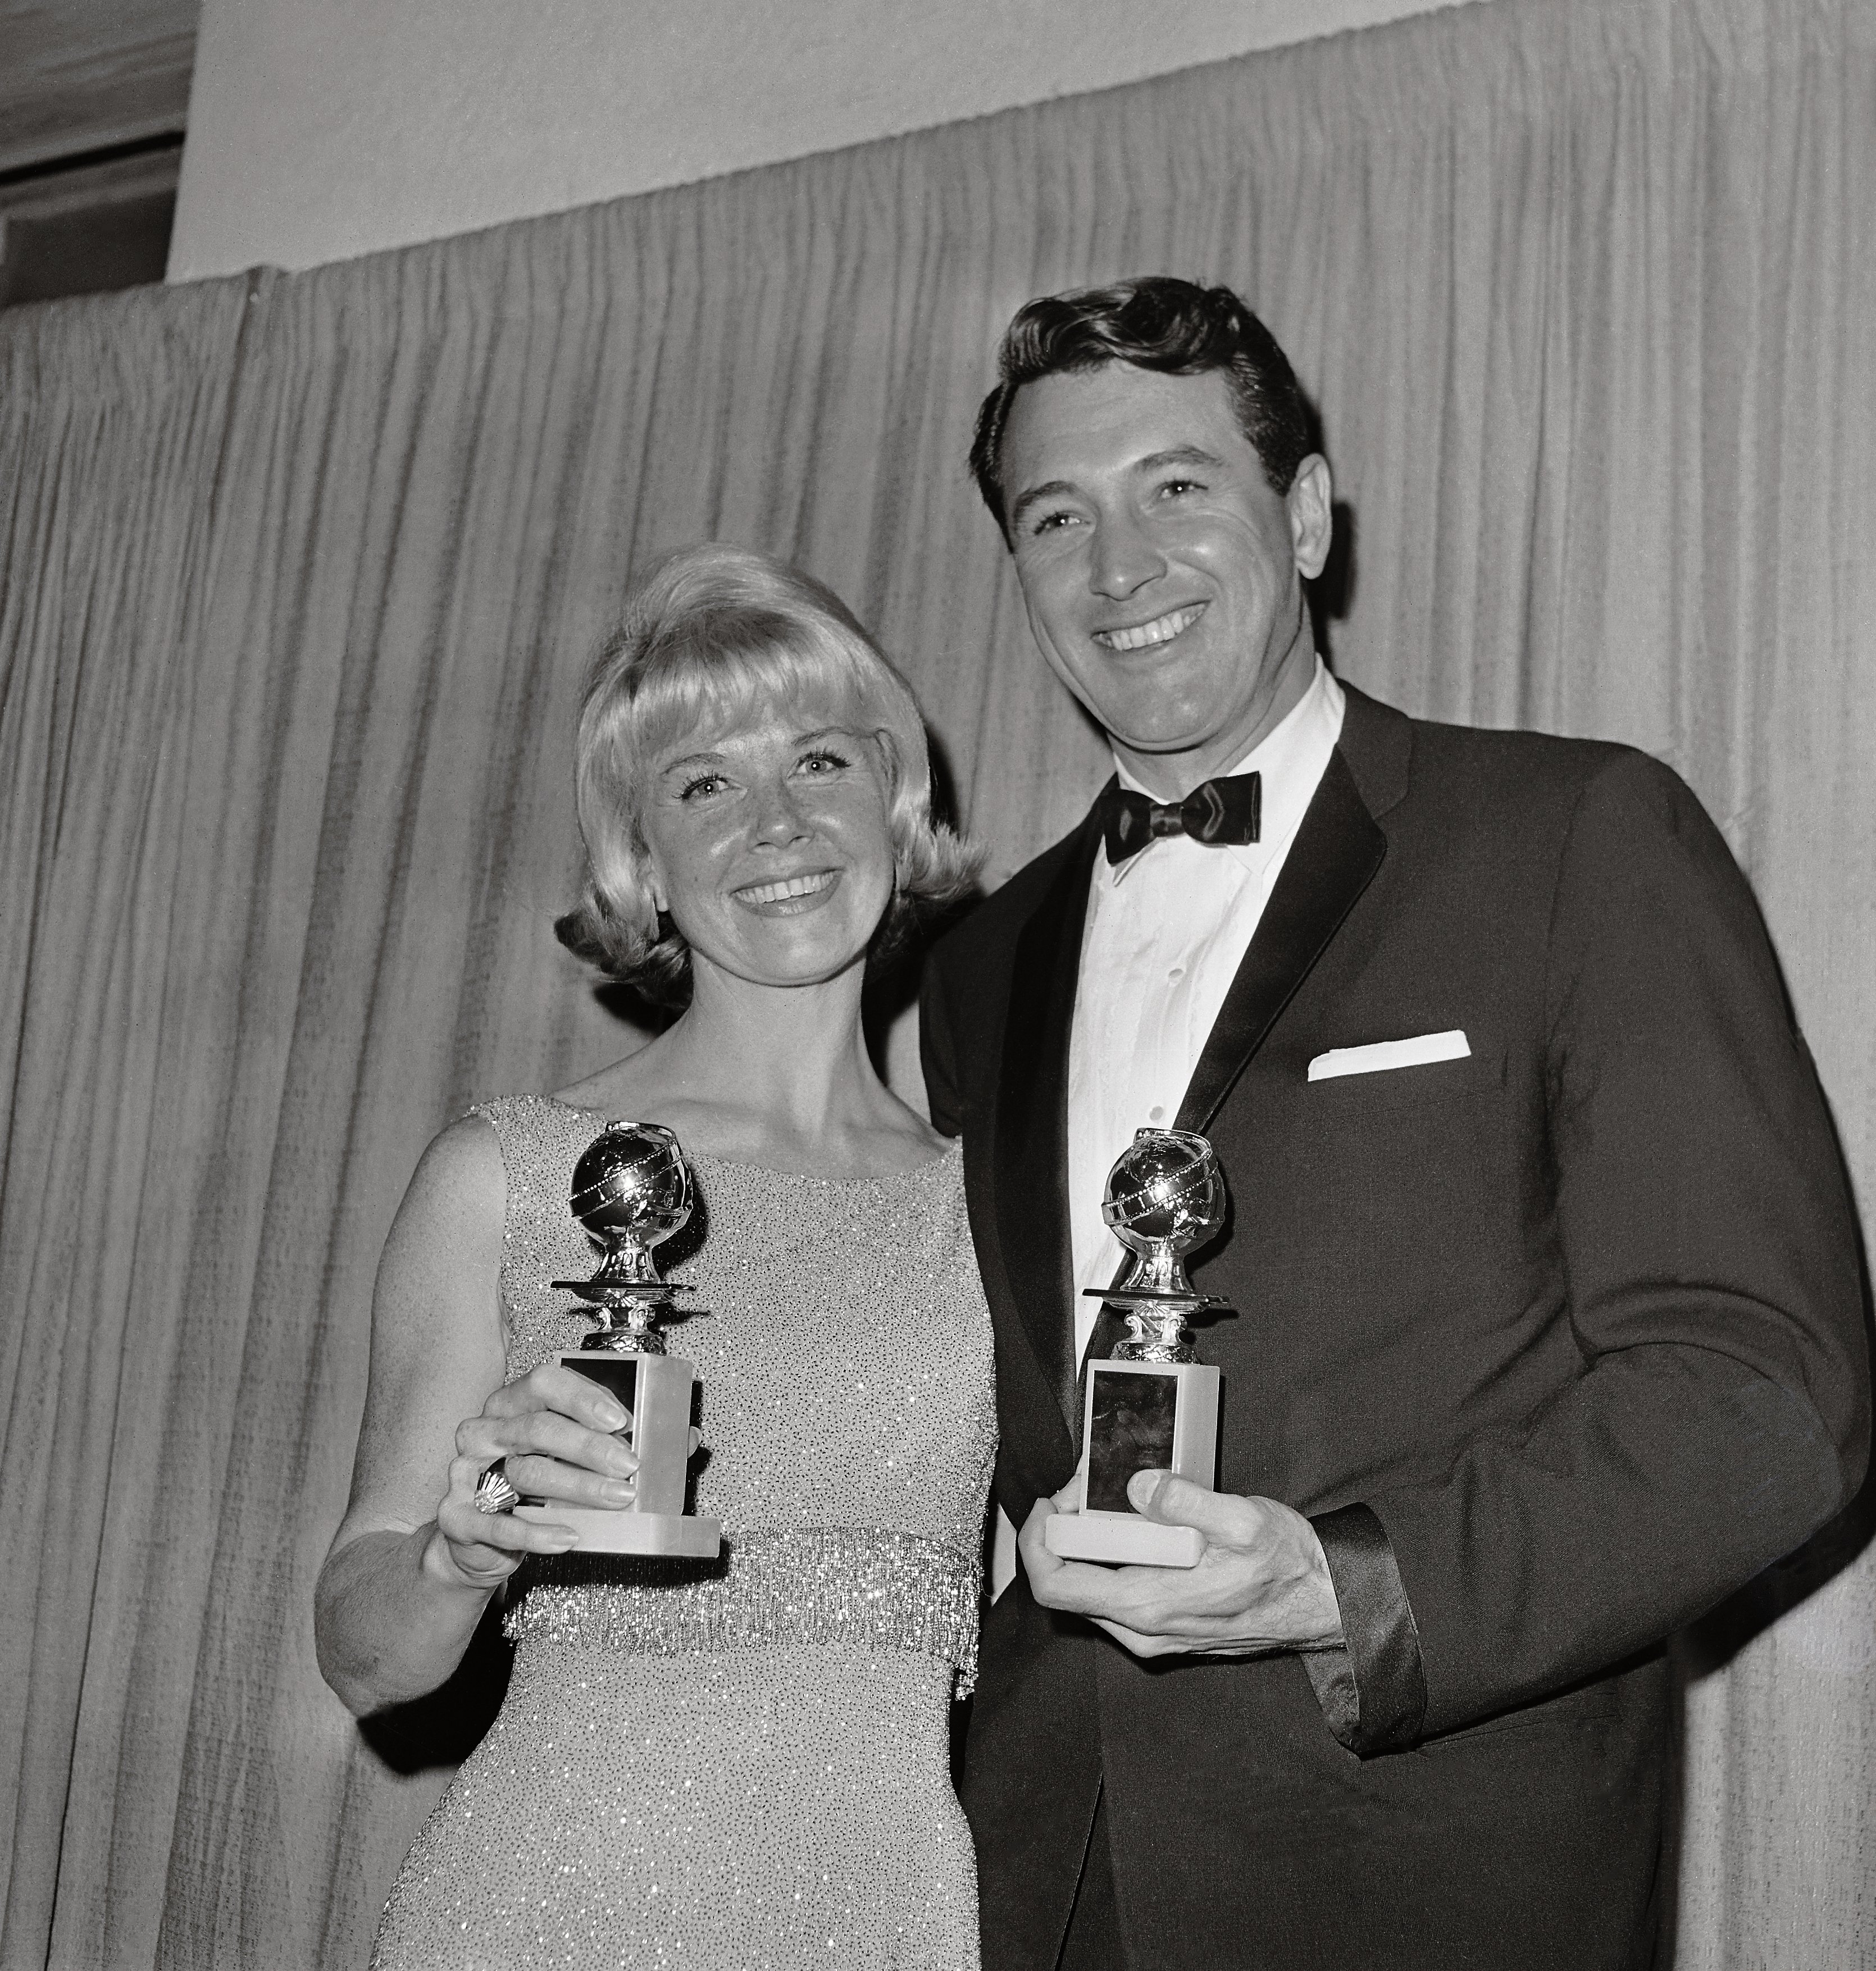 Rock Hudson et Doris Day posent pour une photo après avoir remporté les Golden Globes | Source : Getty Images